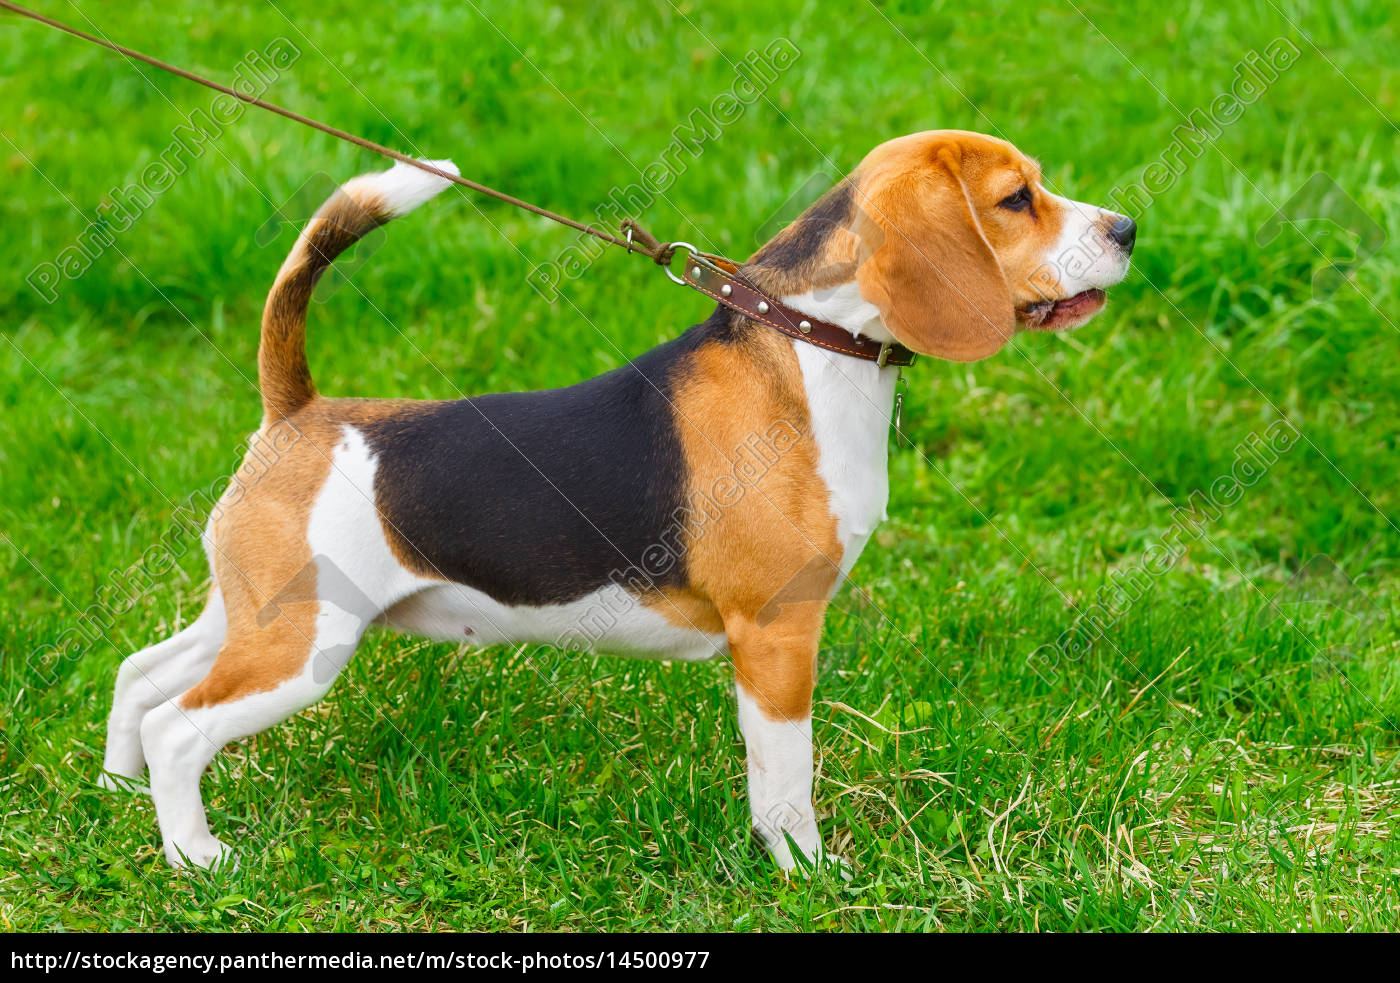 hund rasse beagle stehend auf dem grünen rasen Stockfoto 14500977